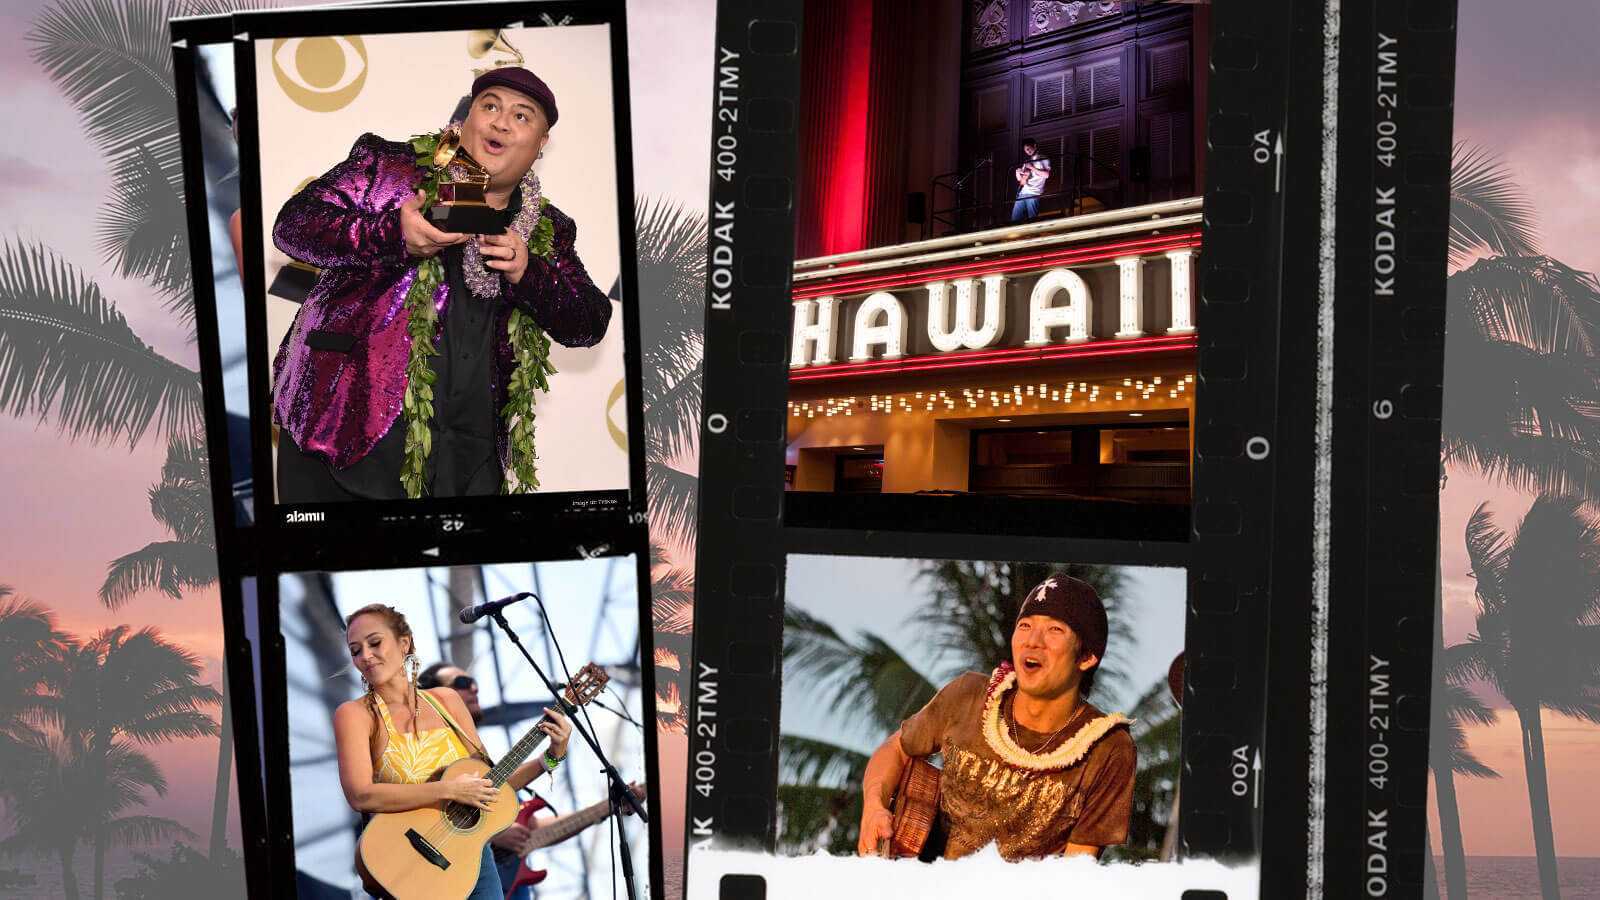 Collage of images featuring various Hawaiian Musicians and artists, Kalani Pe'a, Anuhea and Jake Shimabukuro